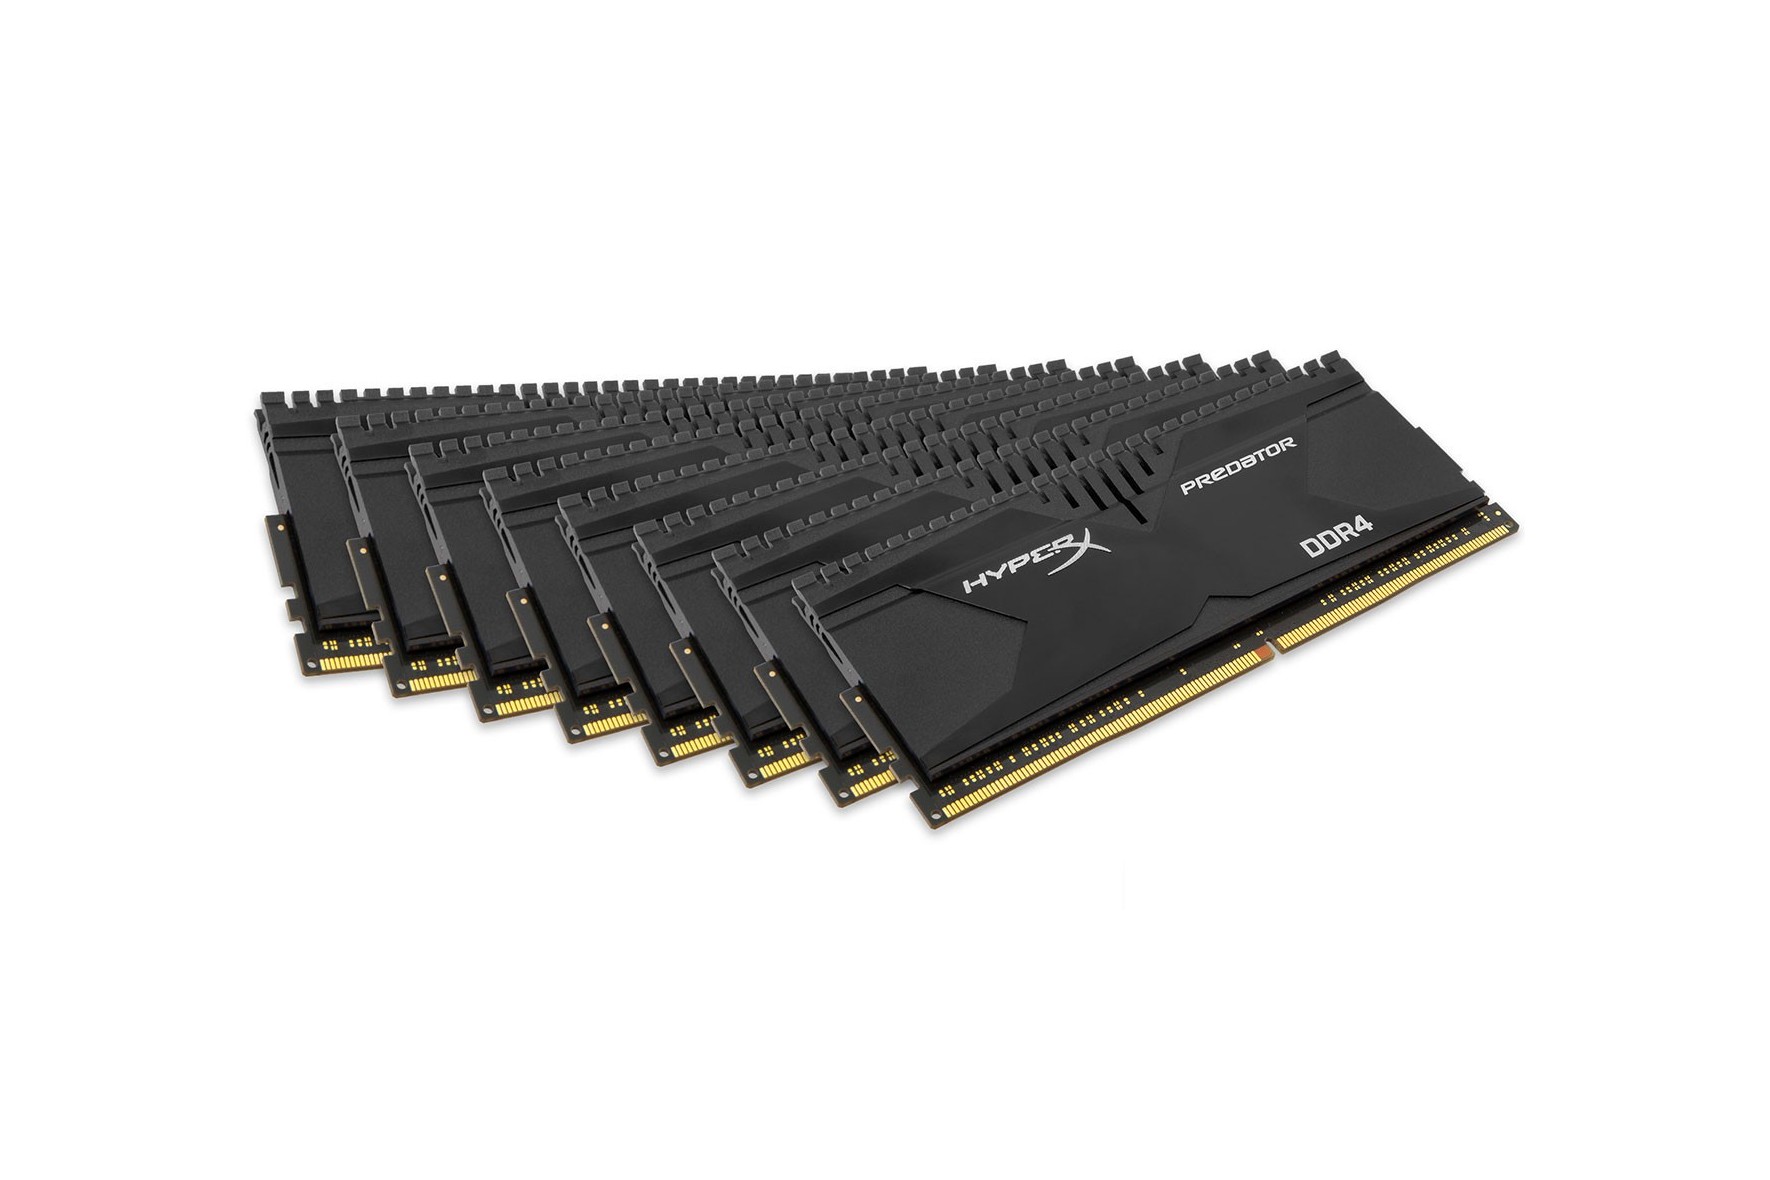 64 гб оперативной памяти цена. Ddr4 Kingston HYPERX Predator 64 GB Ram Kit (16x4) 2800mhz. Оперативная память 8 ГБ 8 шт. HYPERX hx428c14pbk8/64.